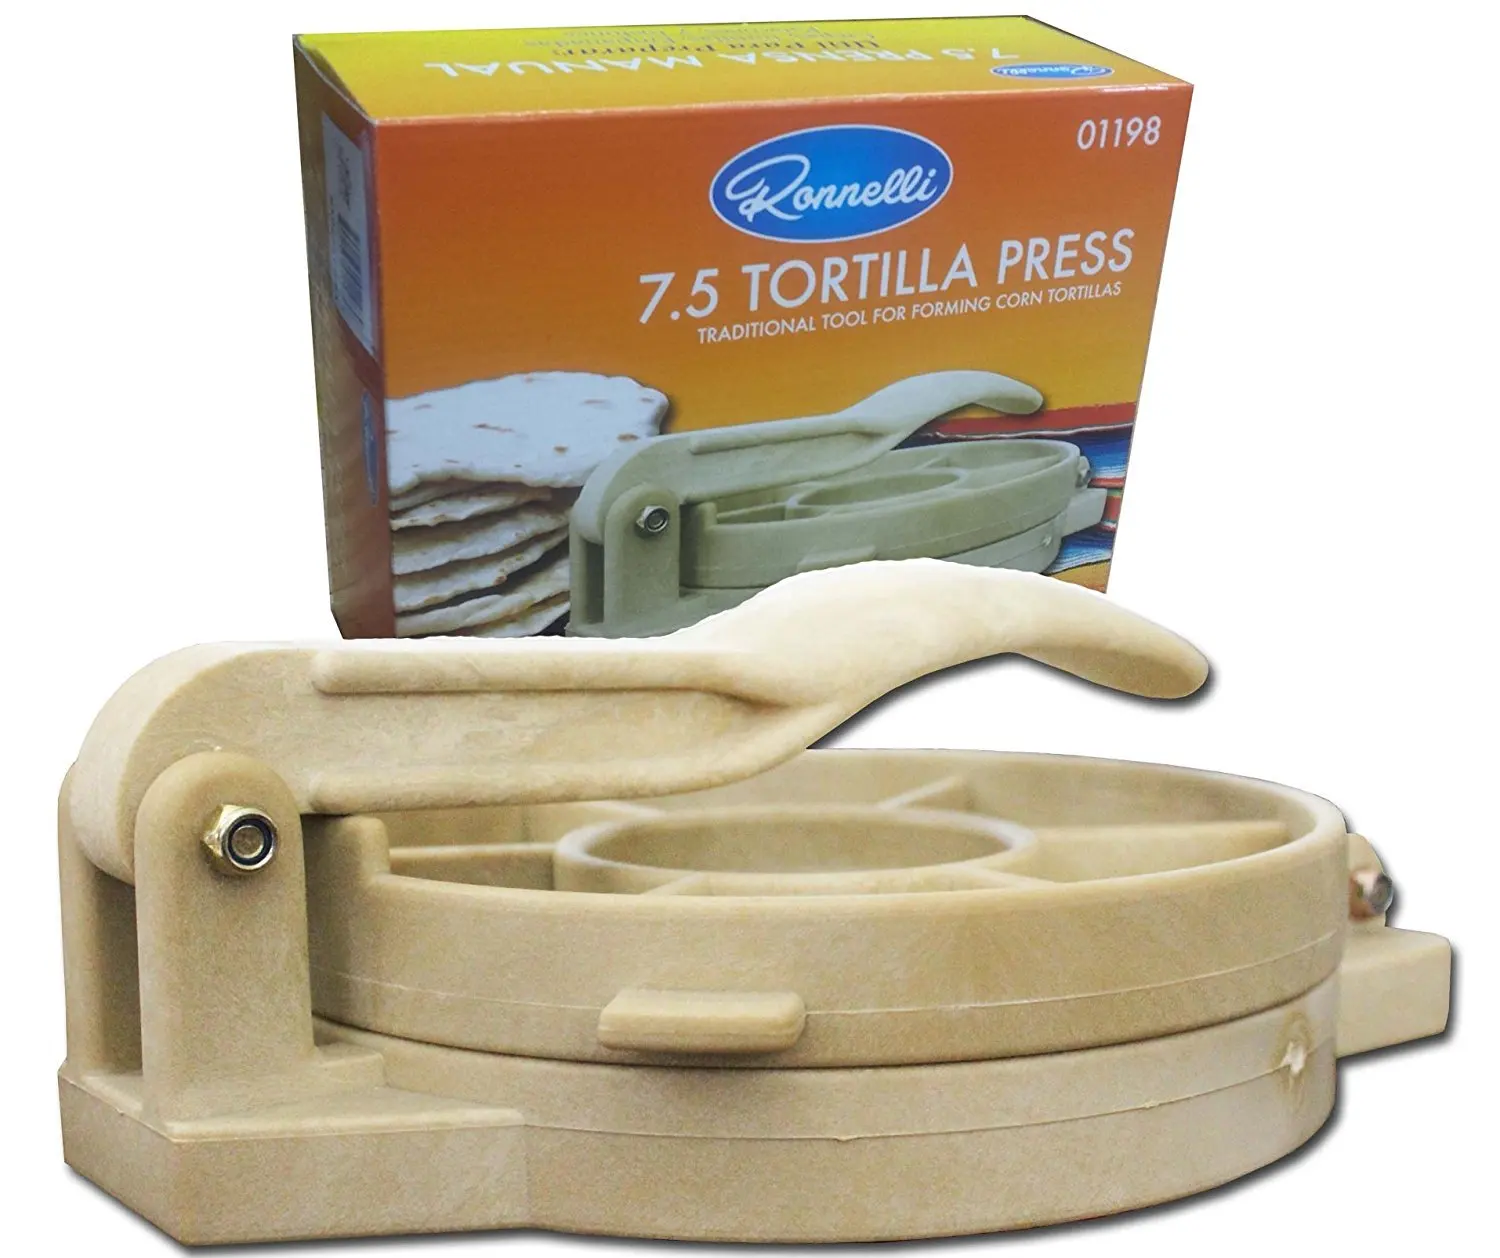 Tortilla Press Heavy Cast Aluminum 7.5 Inch Authentic Tortilla Press Maker.